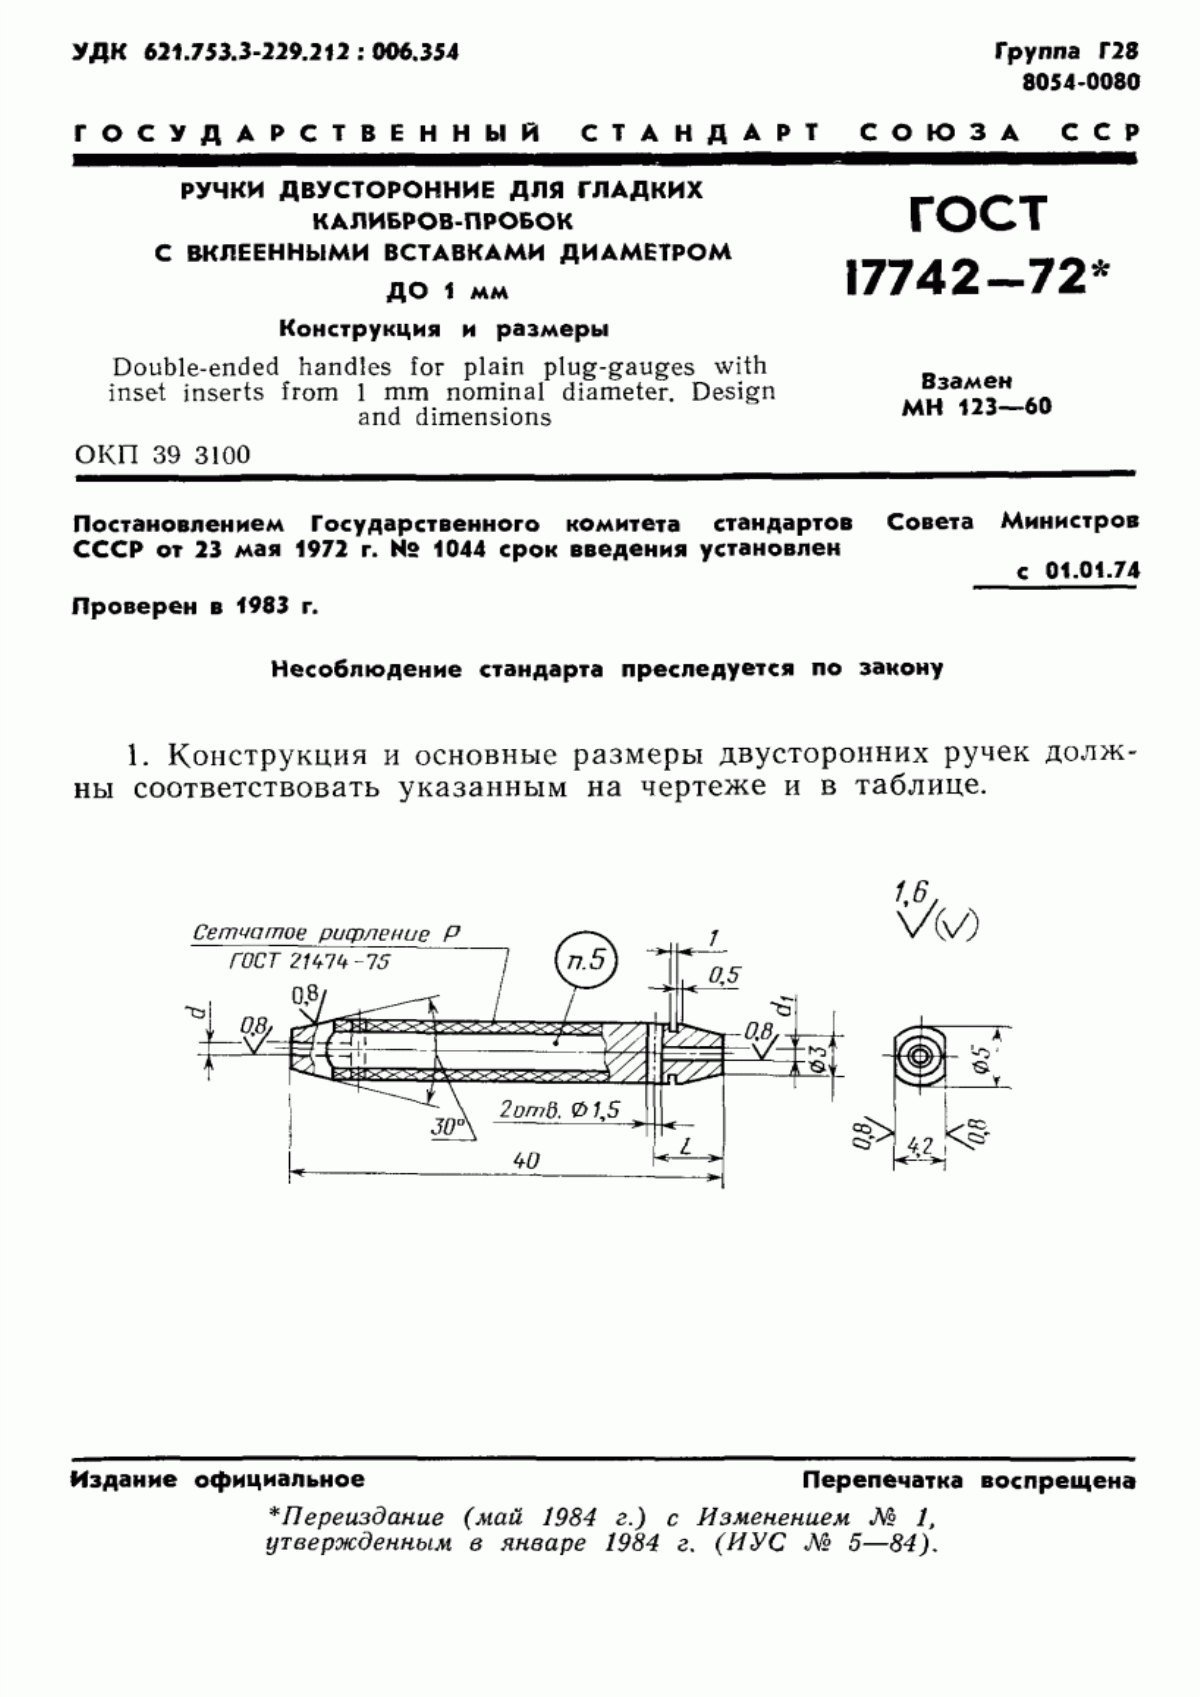 ГОСТ 17742-72 Ручки двусторонние для гладких калибров-пробок с вклеенными вставками диаметром до 1 мм. Конструкция и размеры